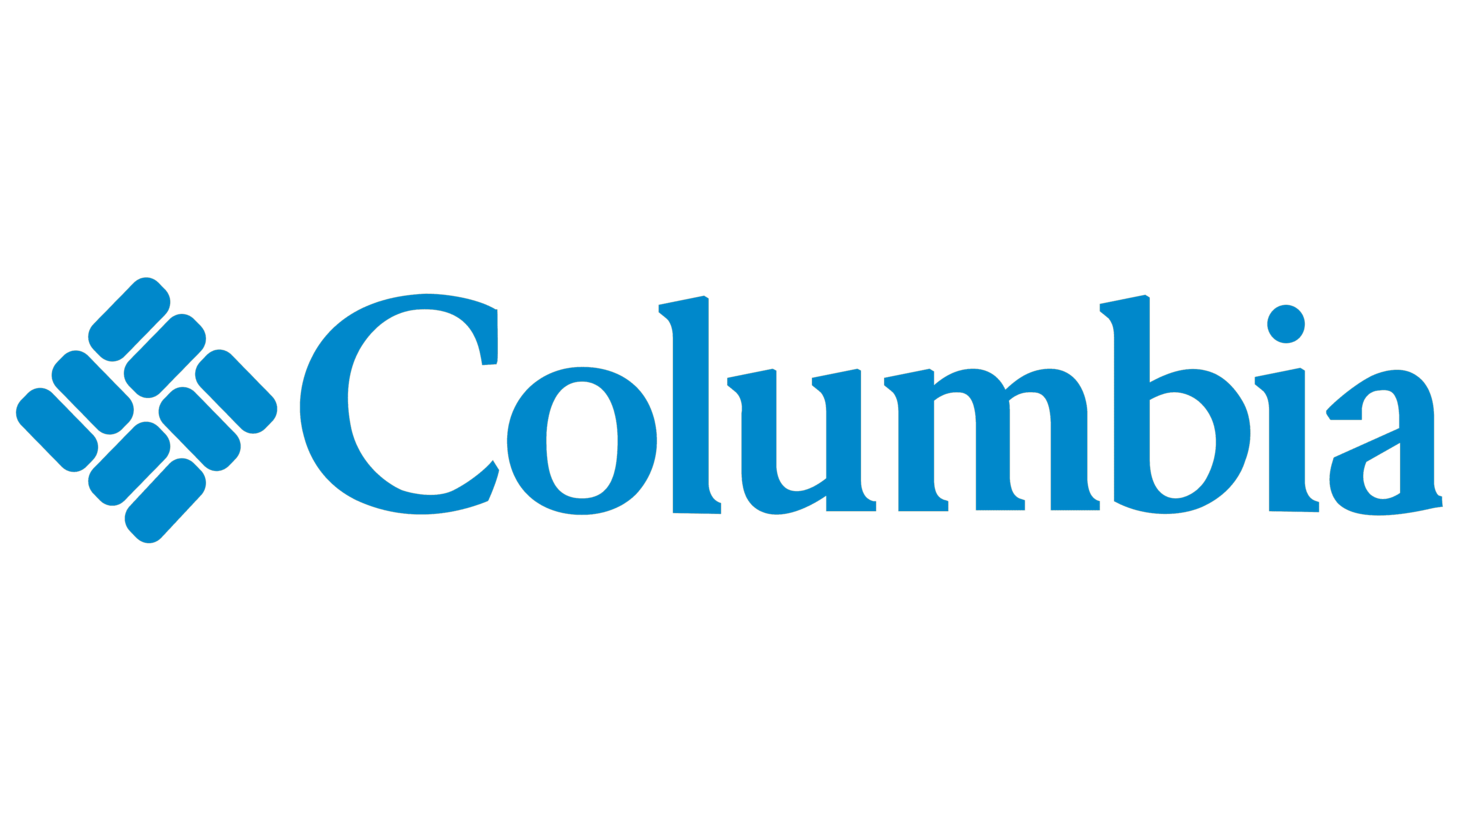 Columbia symbol